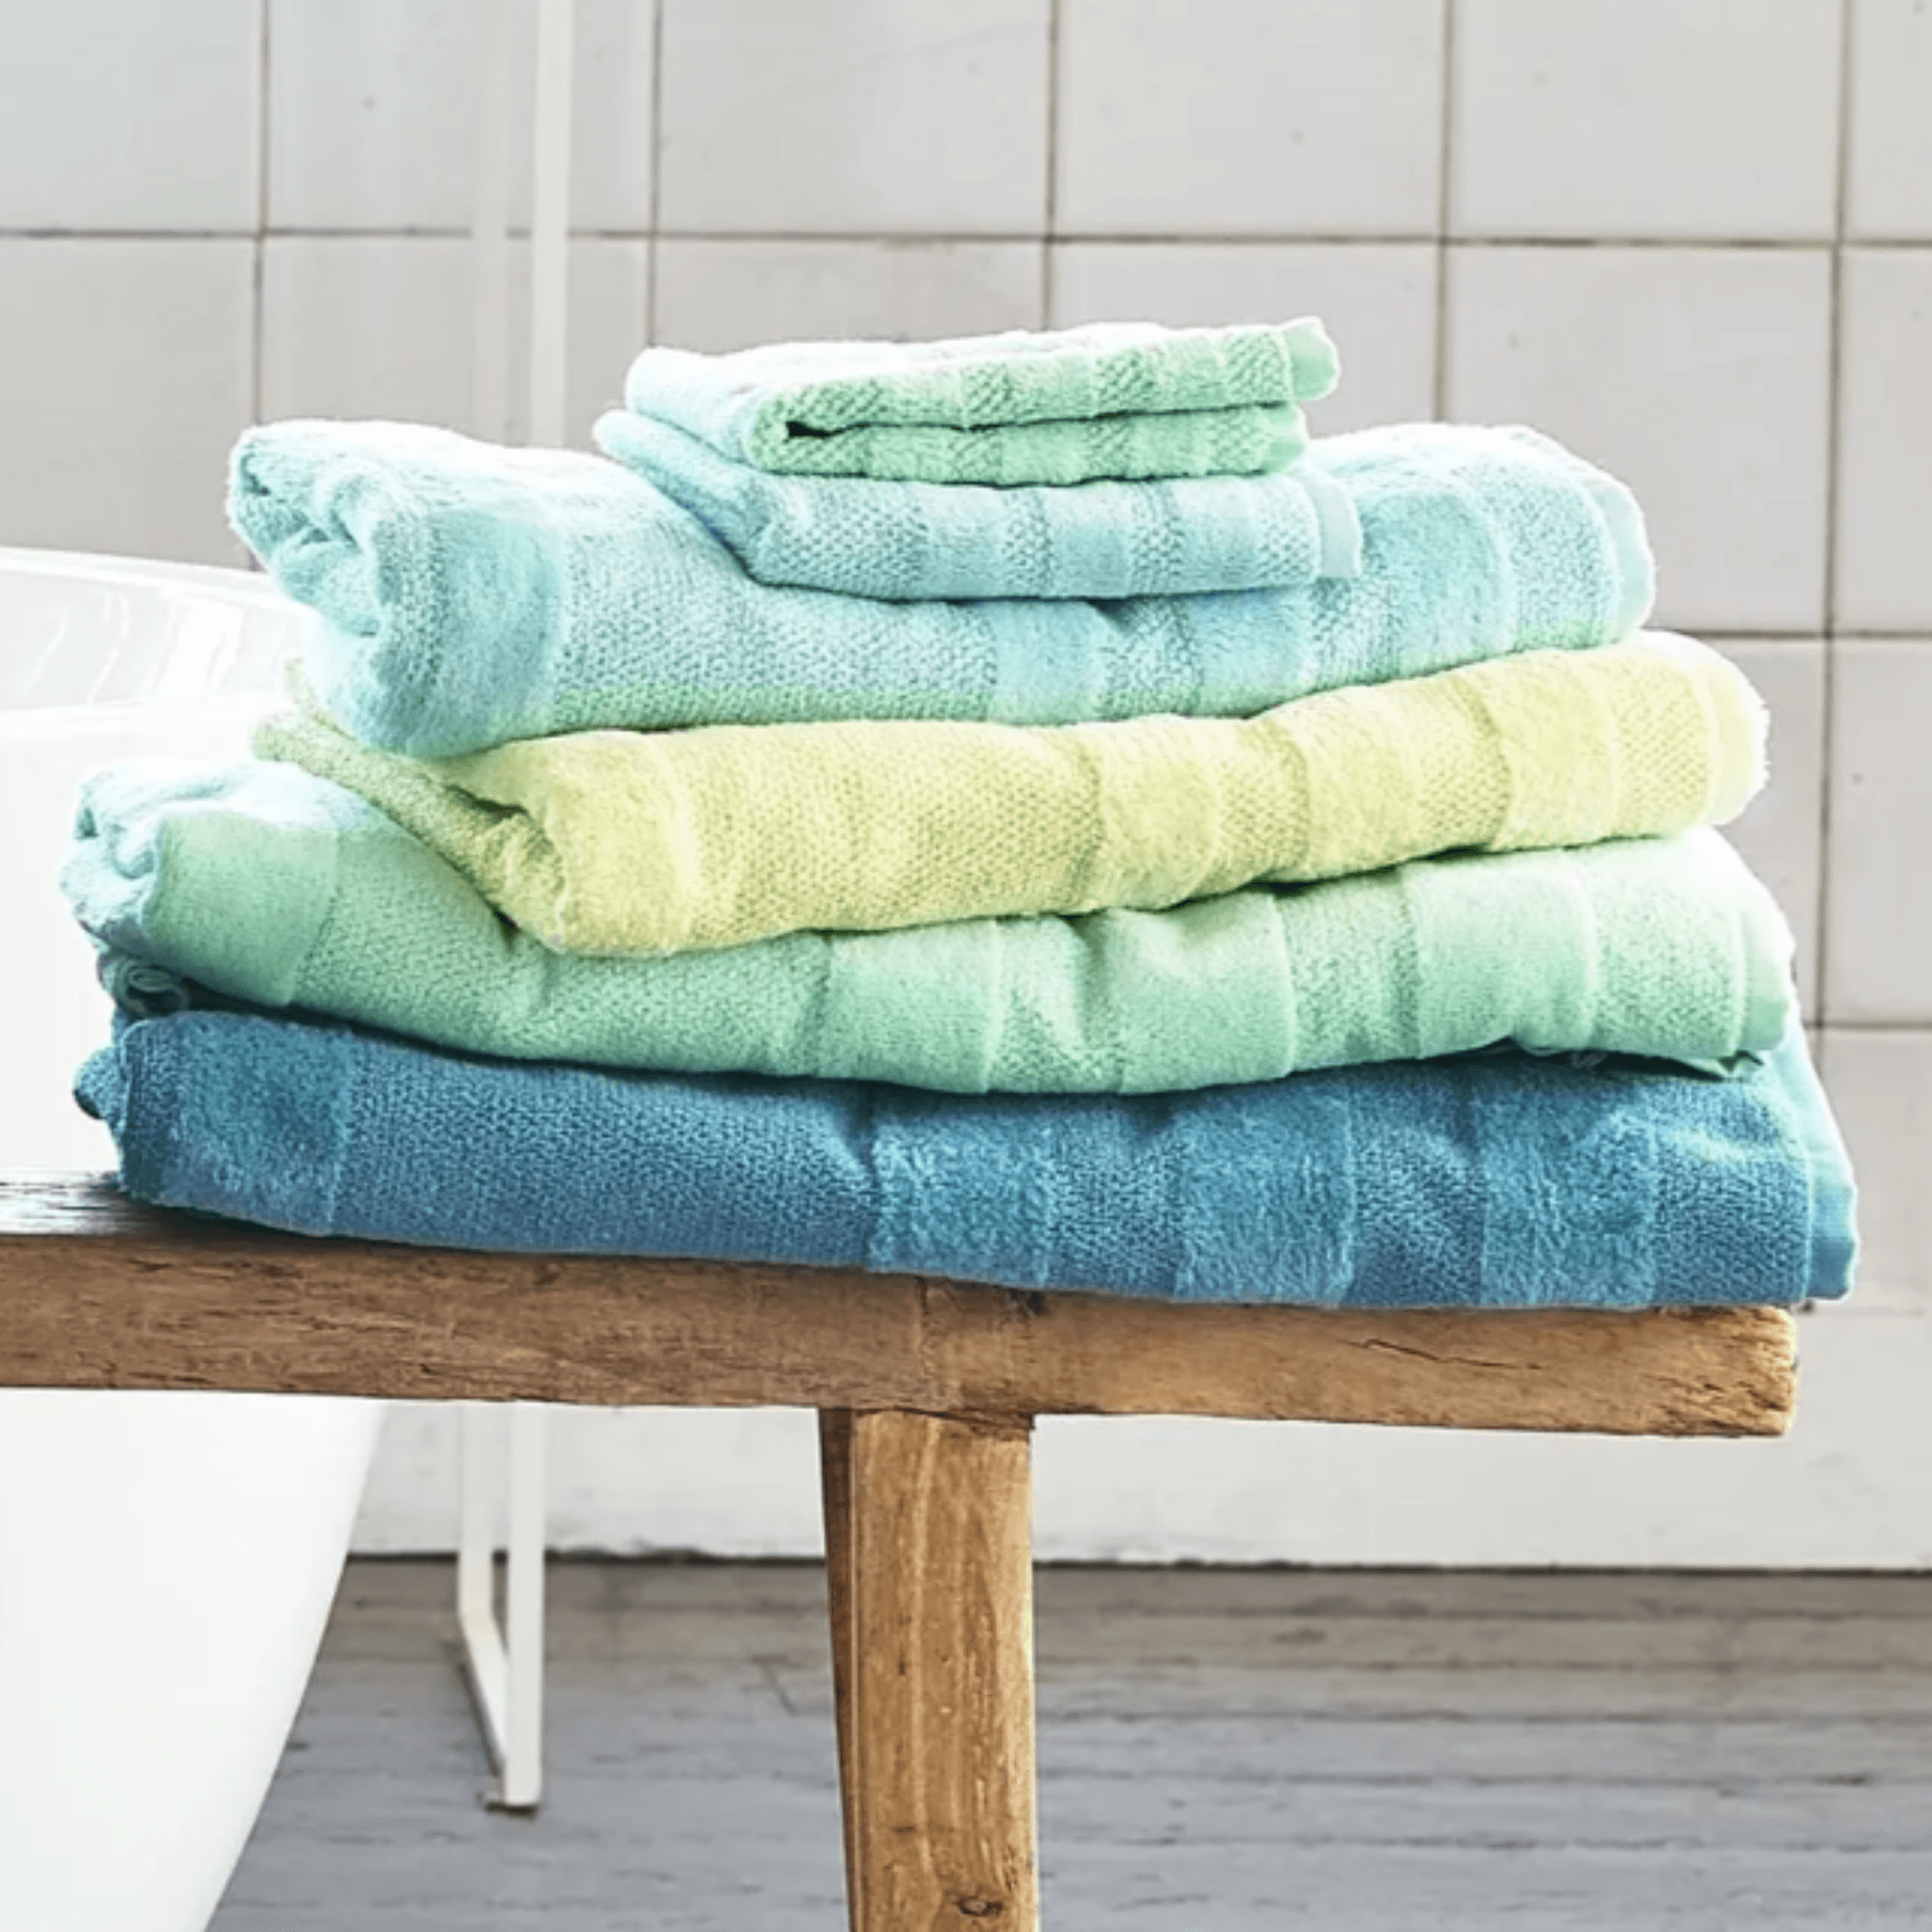 Designers Guild Coniston Aqua Towels, Bath Towel 28 x 51